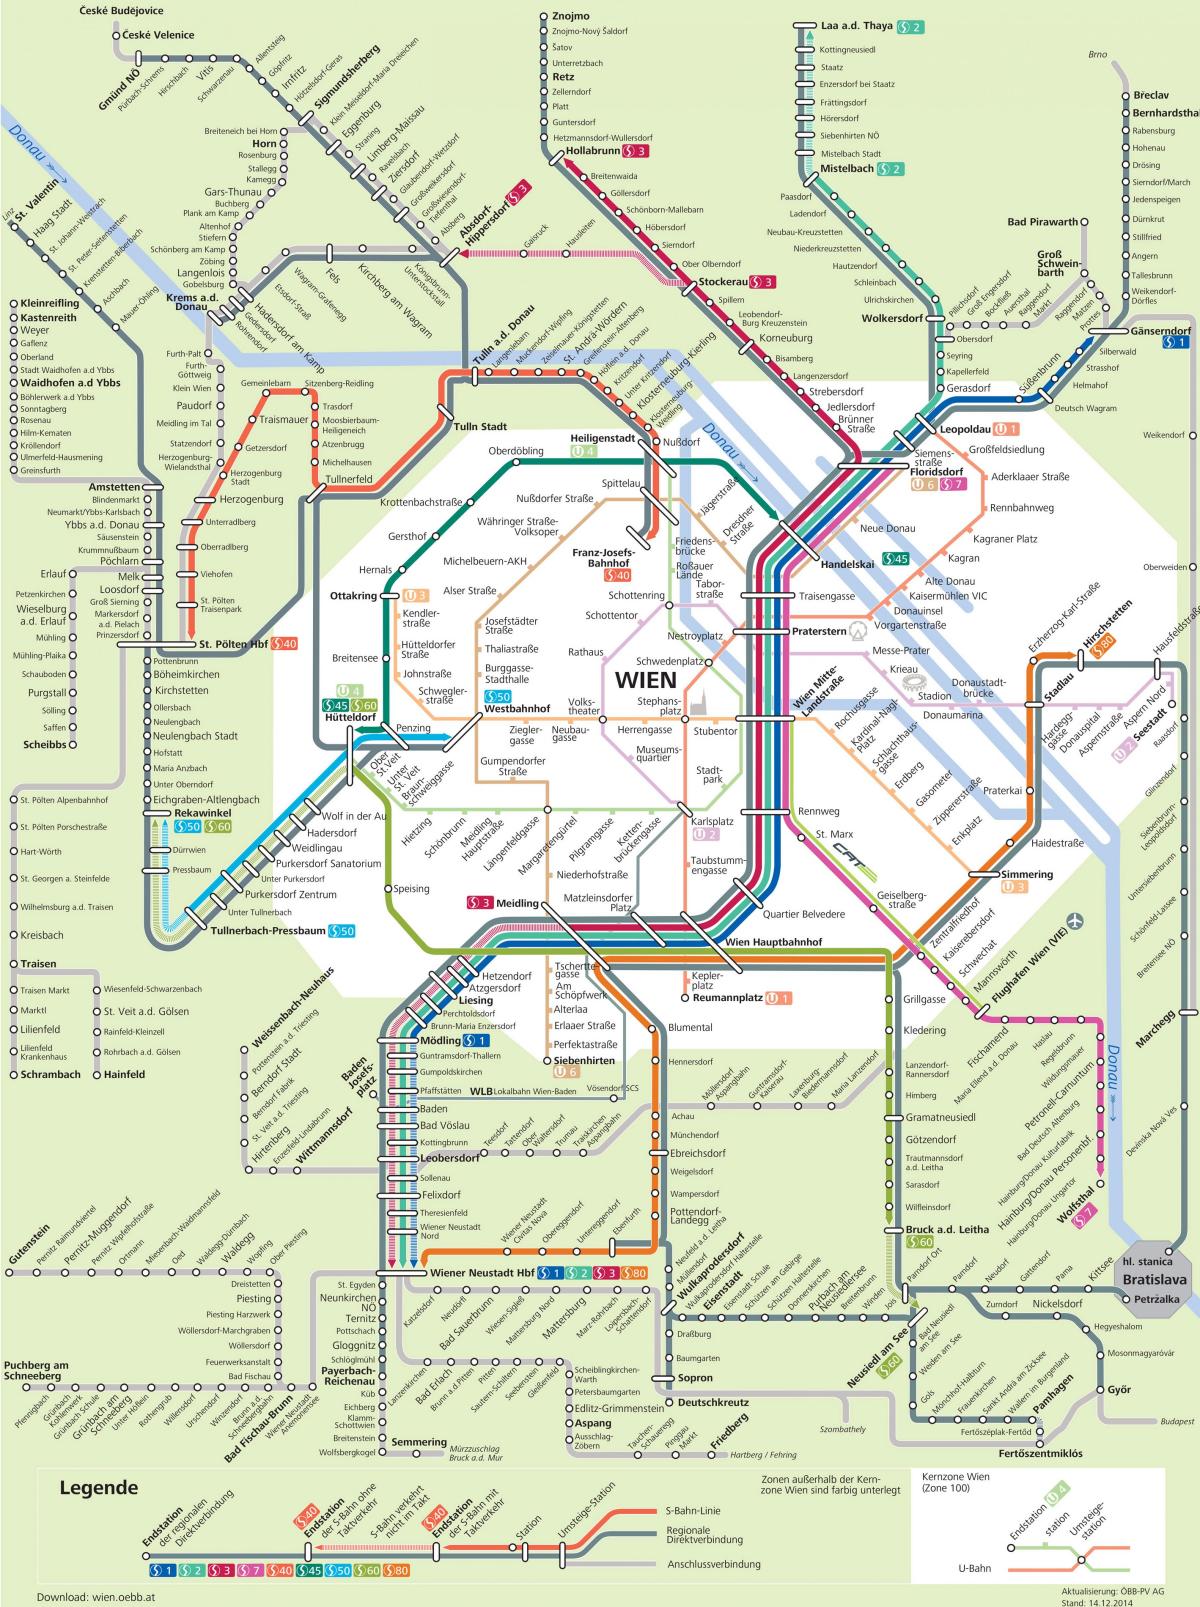 Mapa de Viena s7 rota